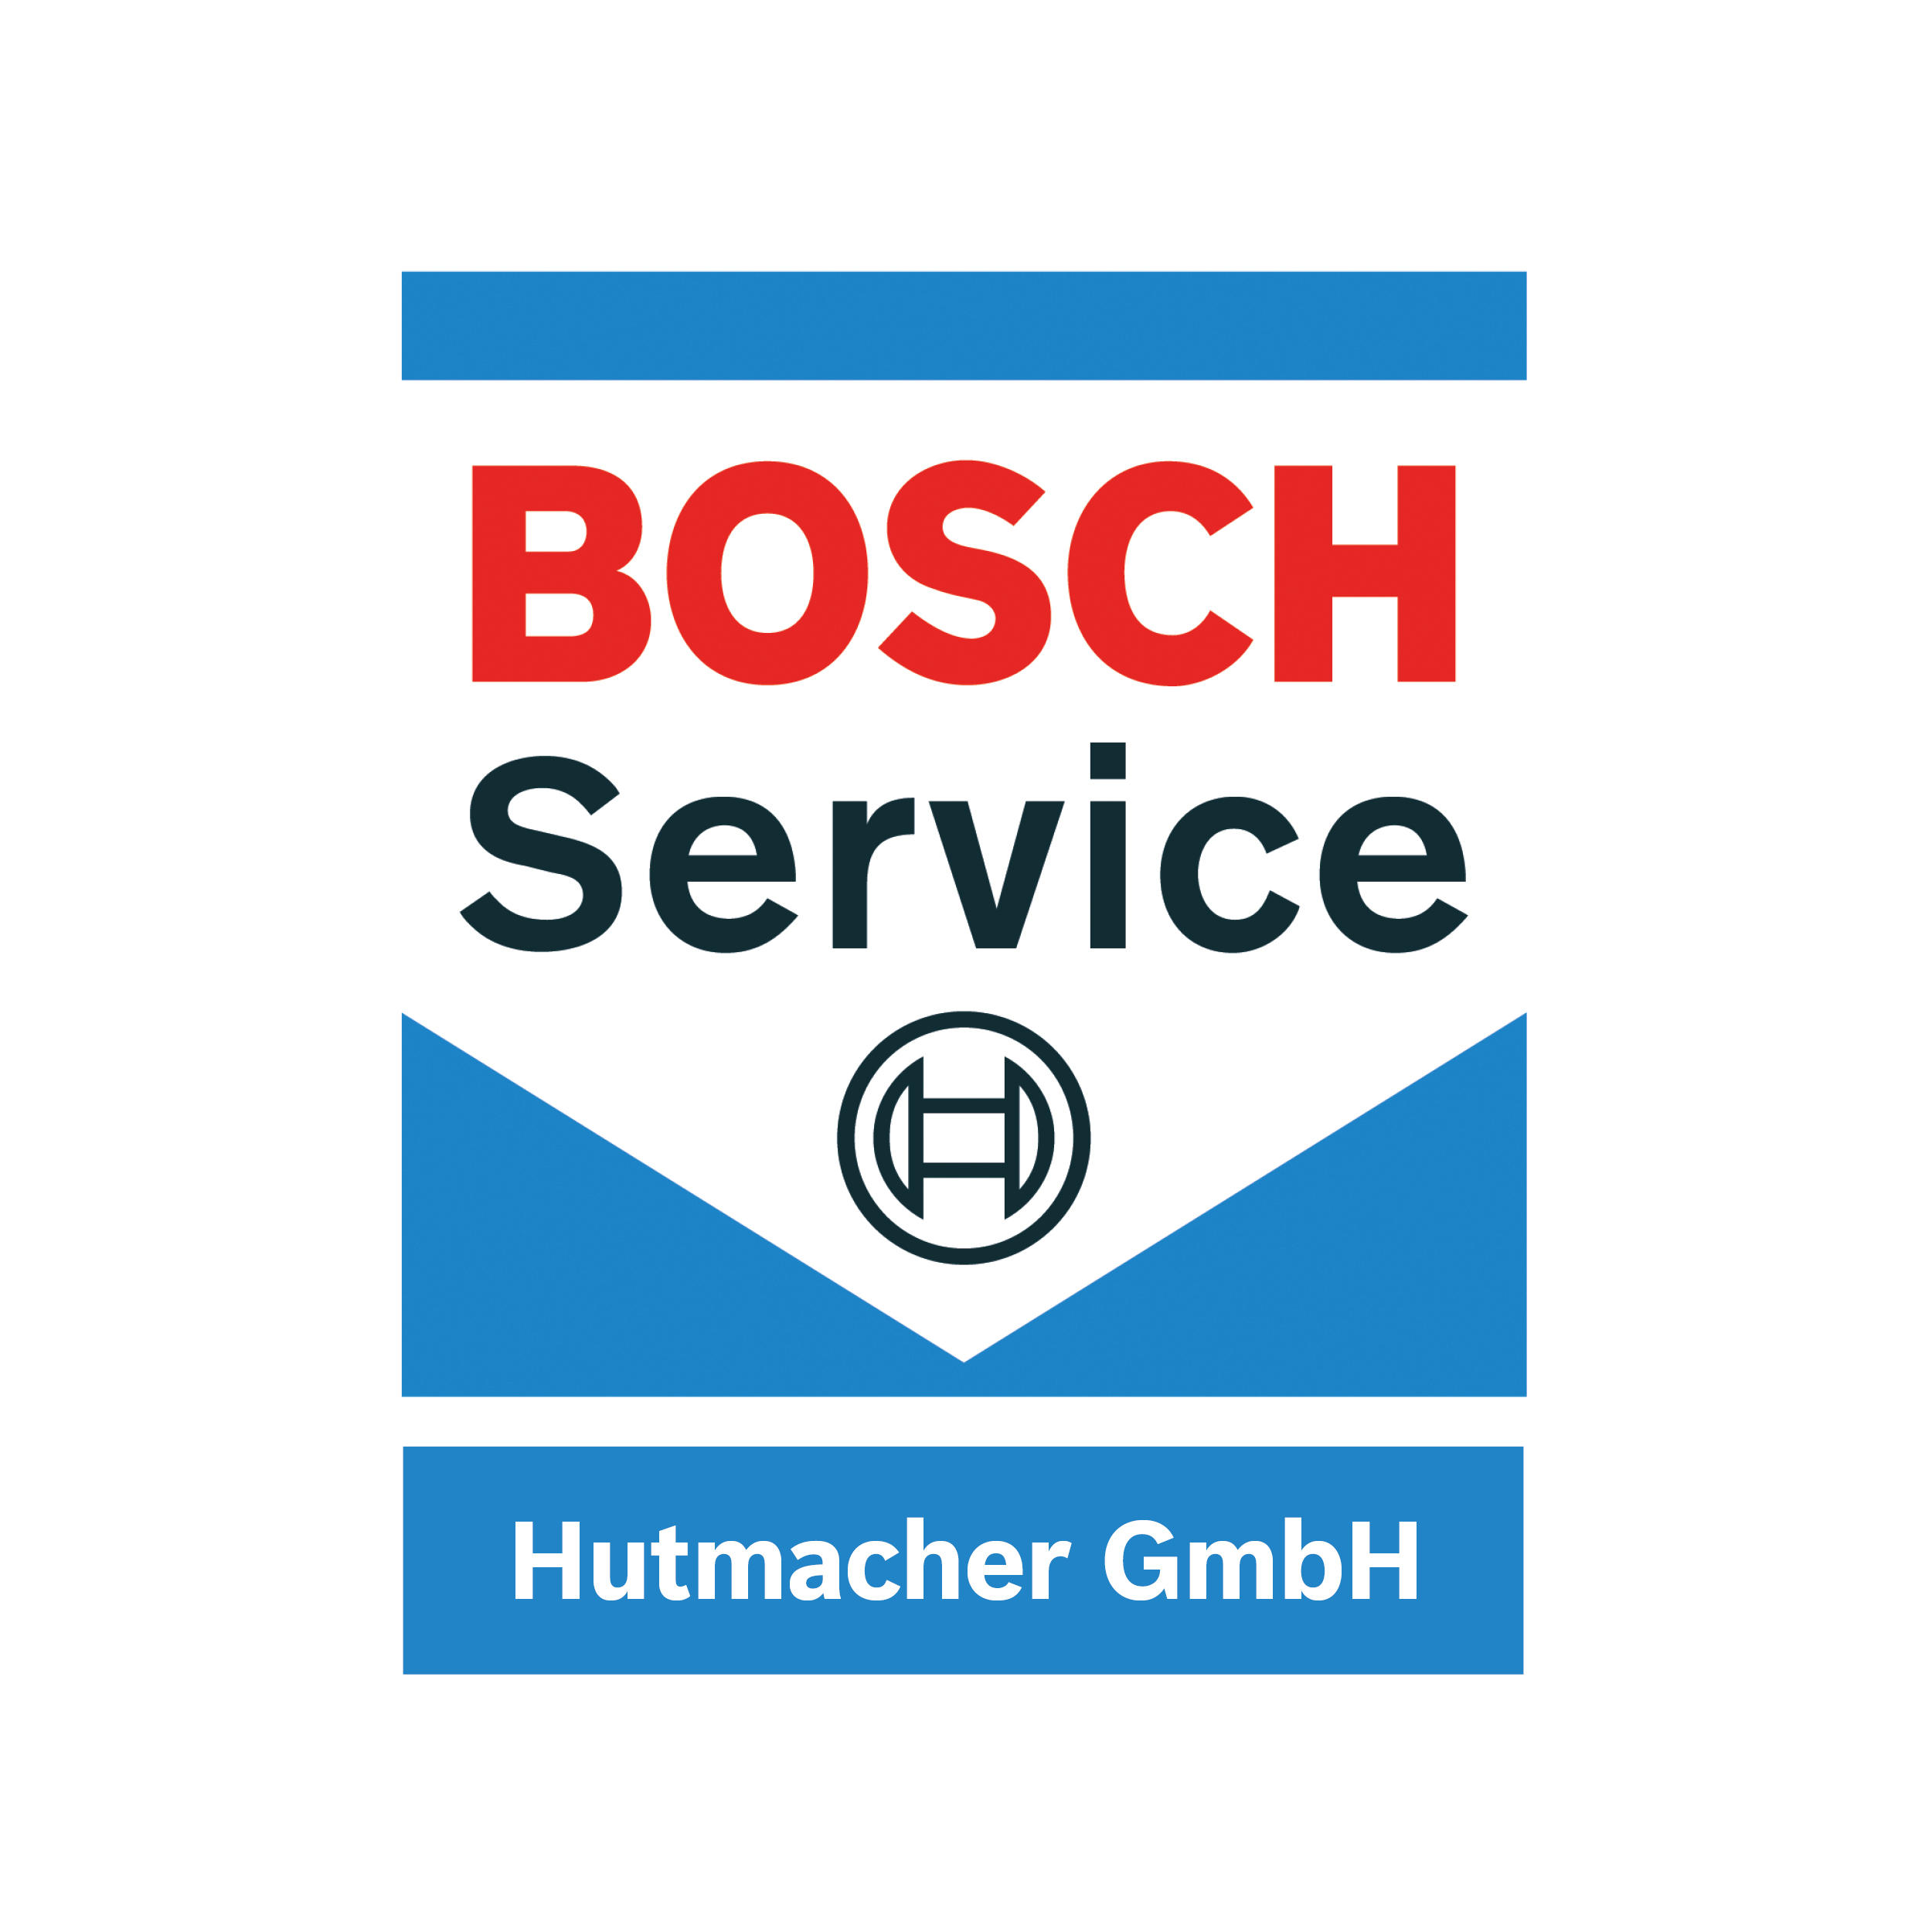 Hutmacher GmbH Bosch Service  